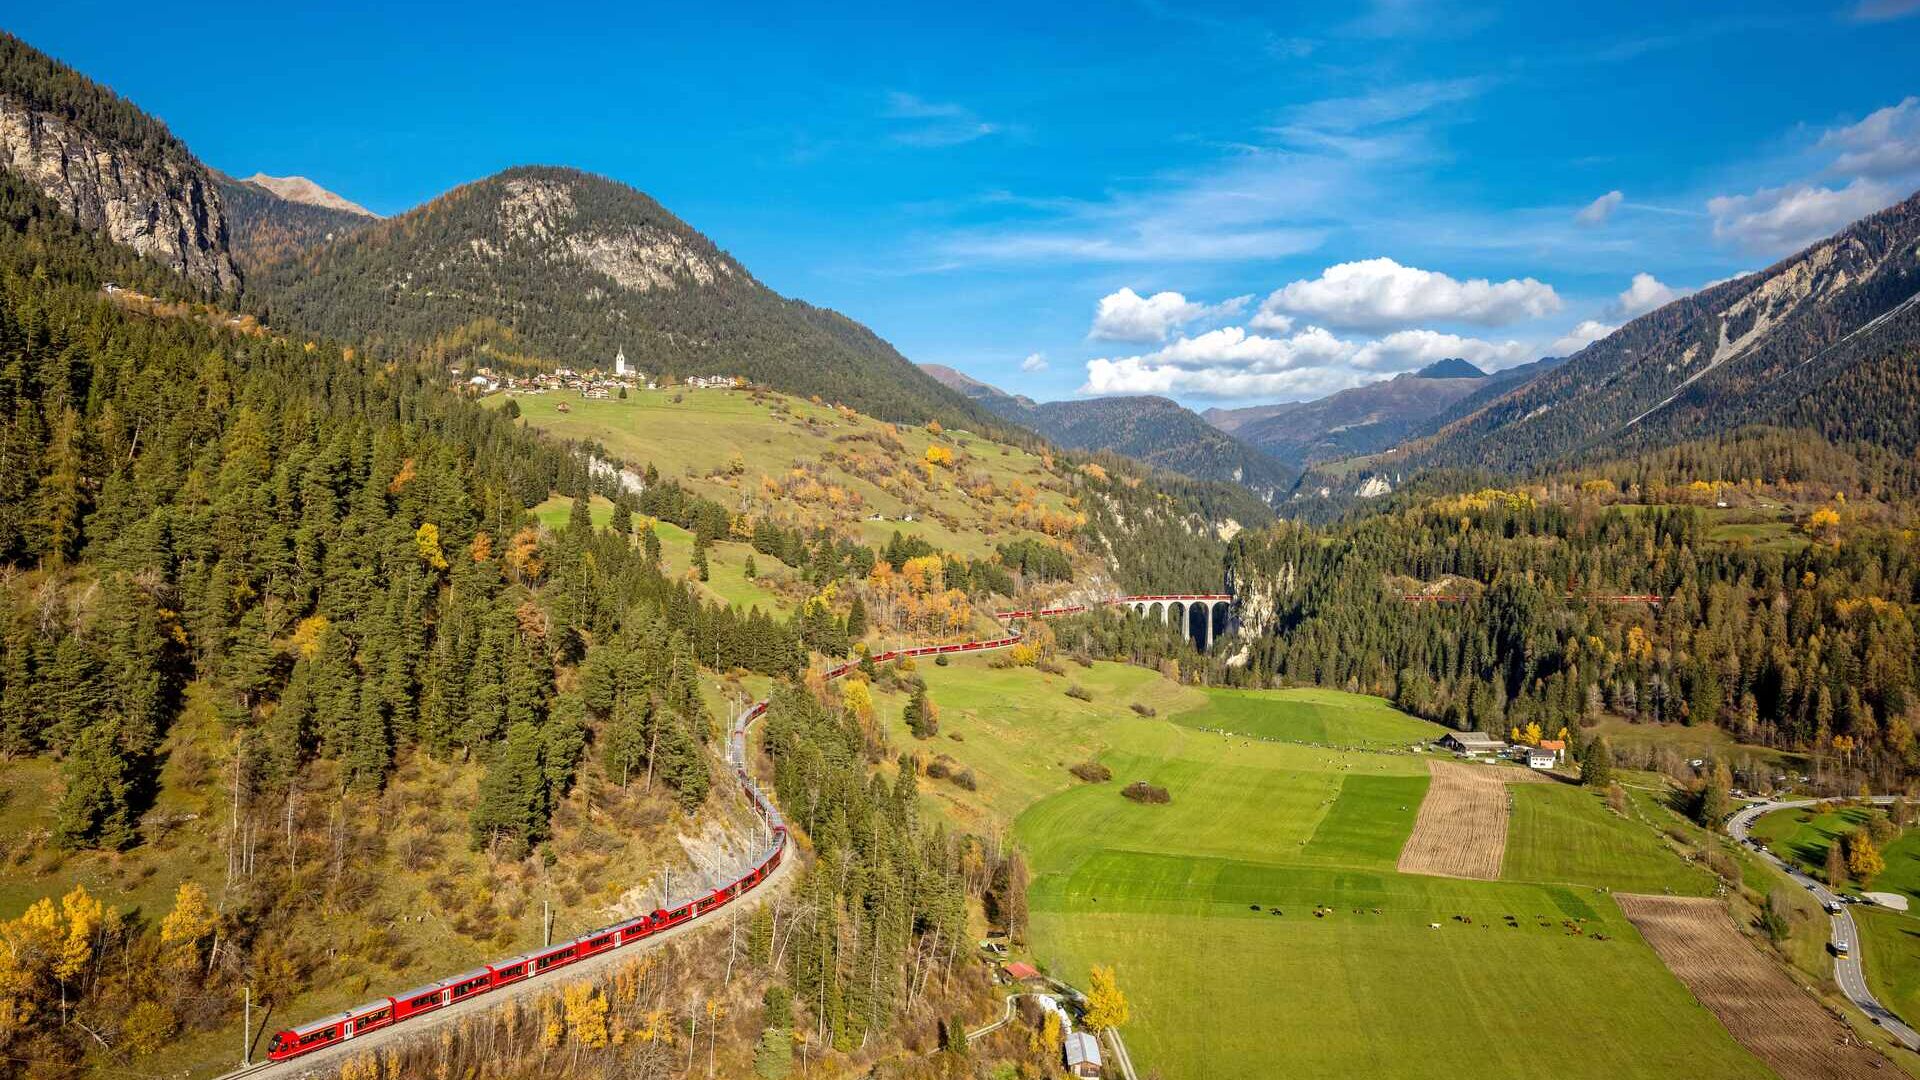 Cel mai lung tren cu ecartament îngust din lume de pe linia Albula a Căii Ferate Retice din Elveția, pe 29 octombrie 2022 (Foto: Andy Mettler/Swiss-Image)